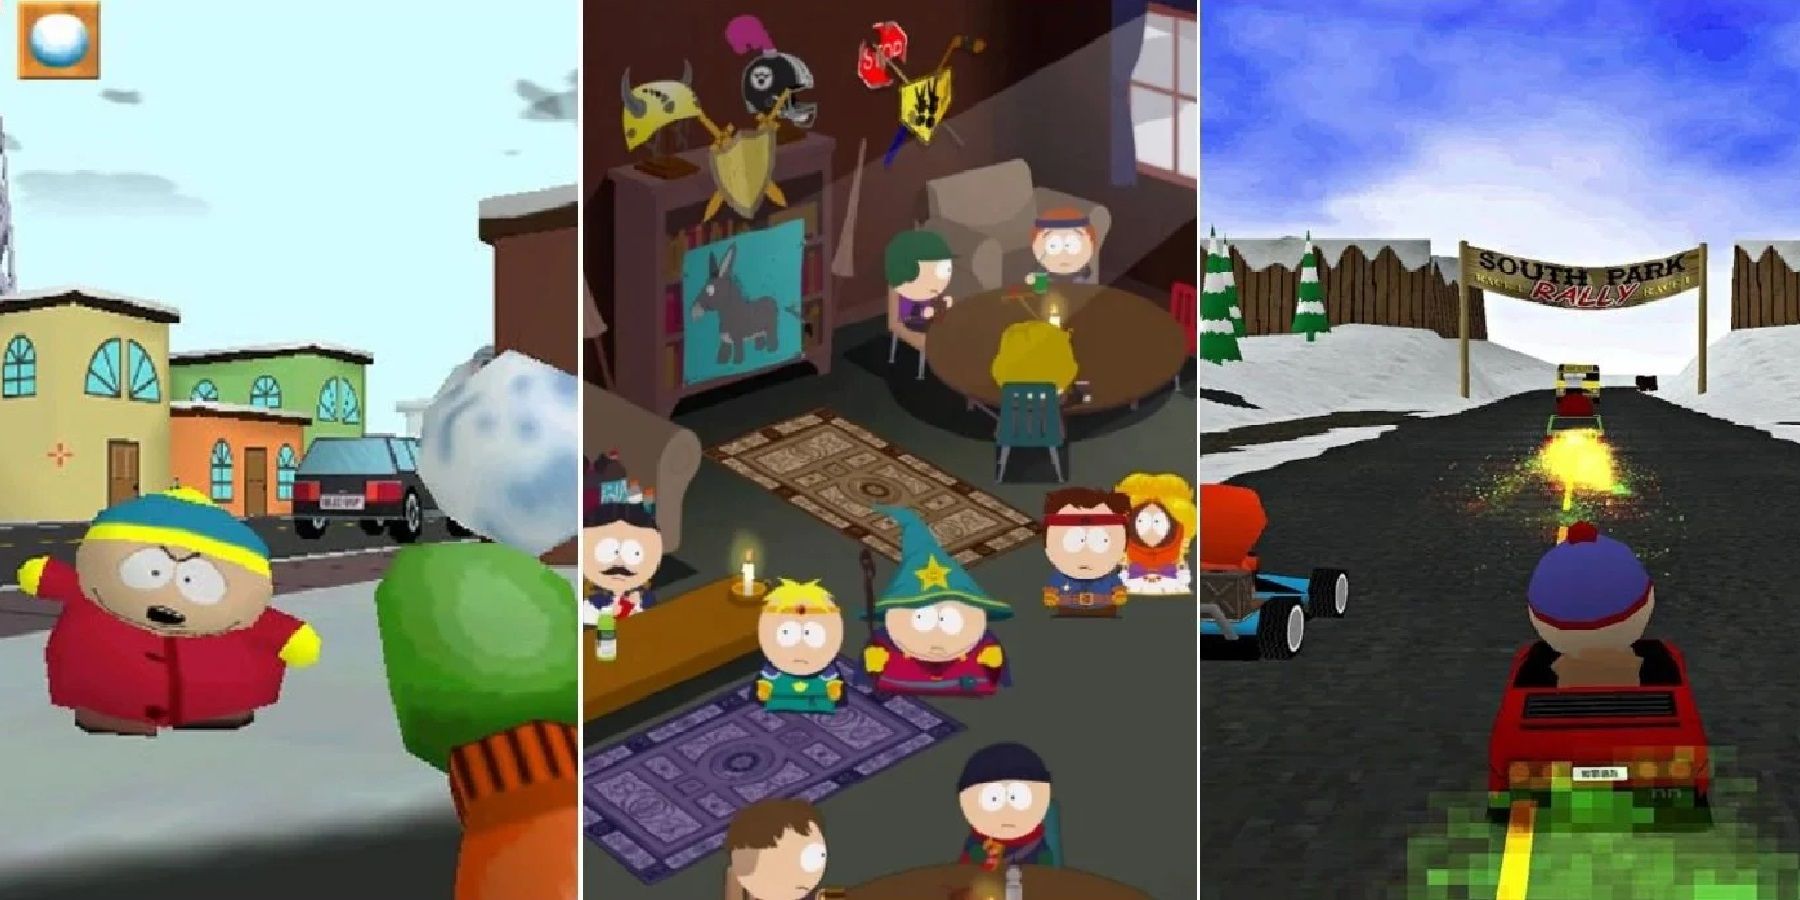 New South Park Game Developer Revealed